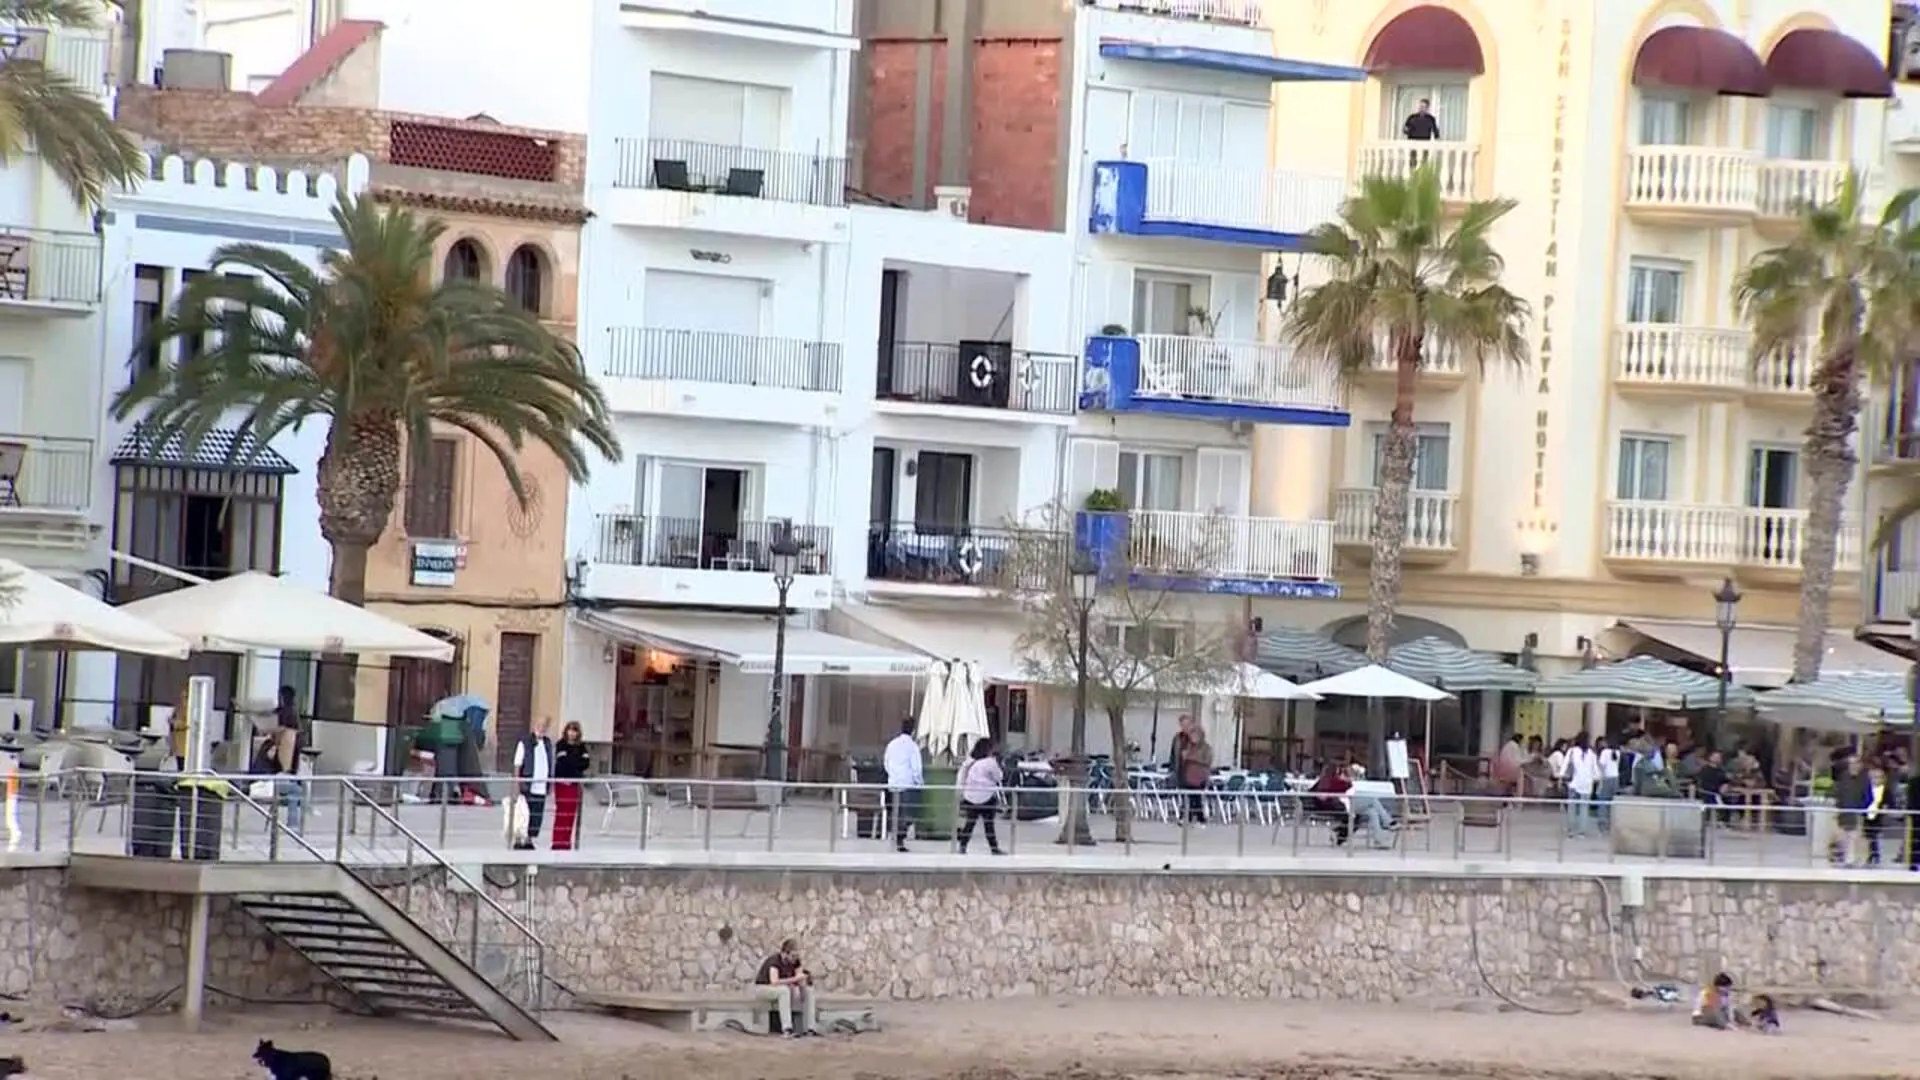 El ayuntamiento de Sitges cifra su ocupación hotelera en un 80% durante semana santa